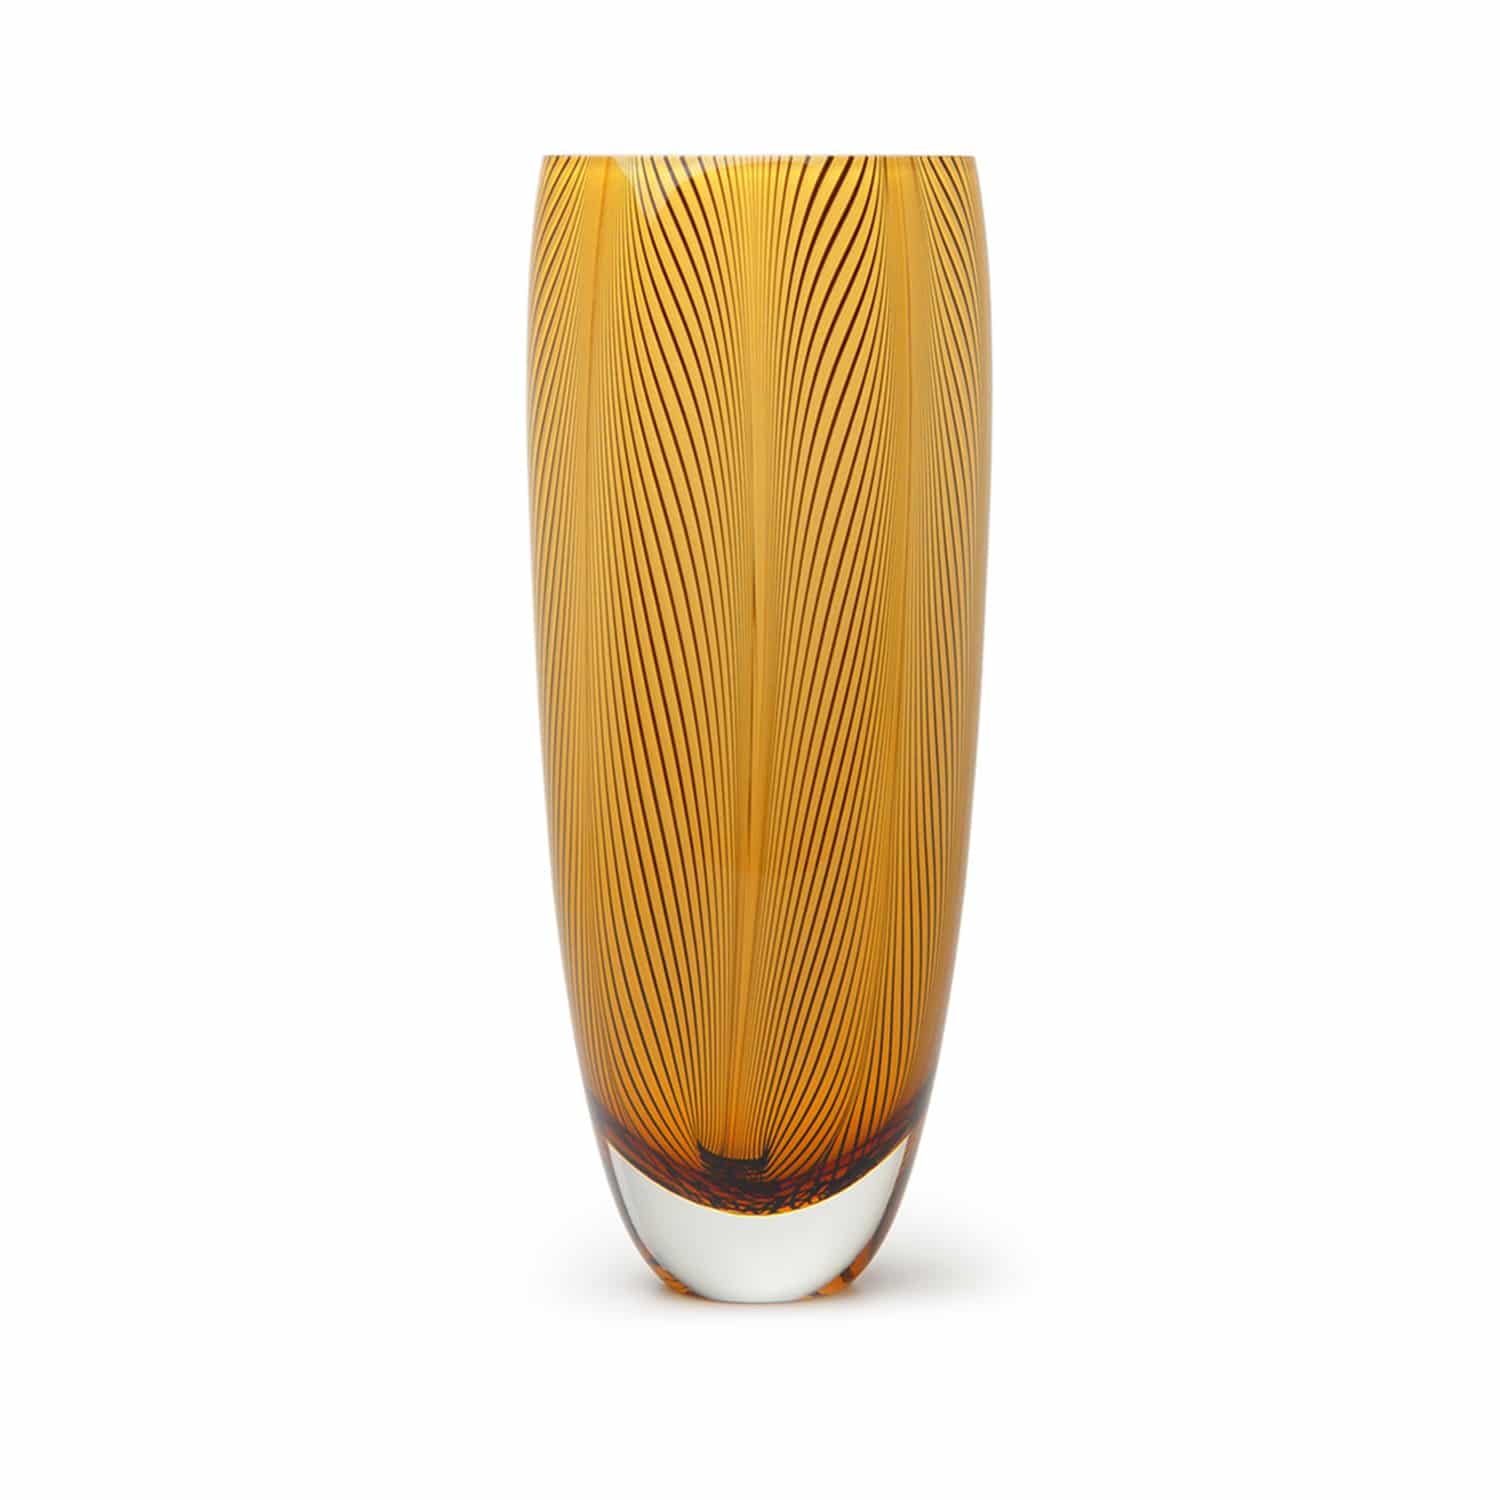 Designer Amber glass vase